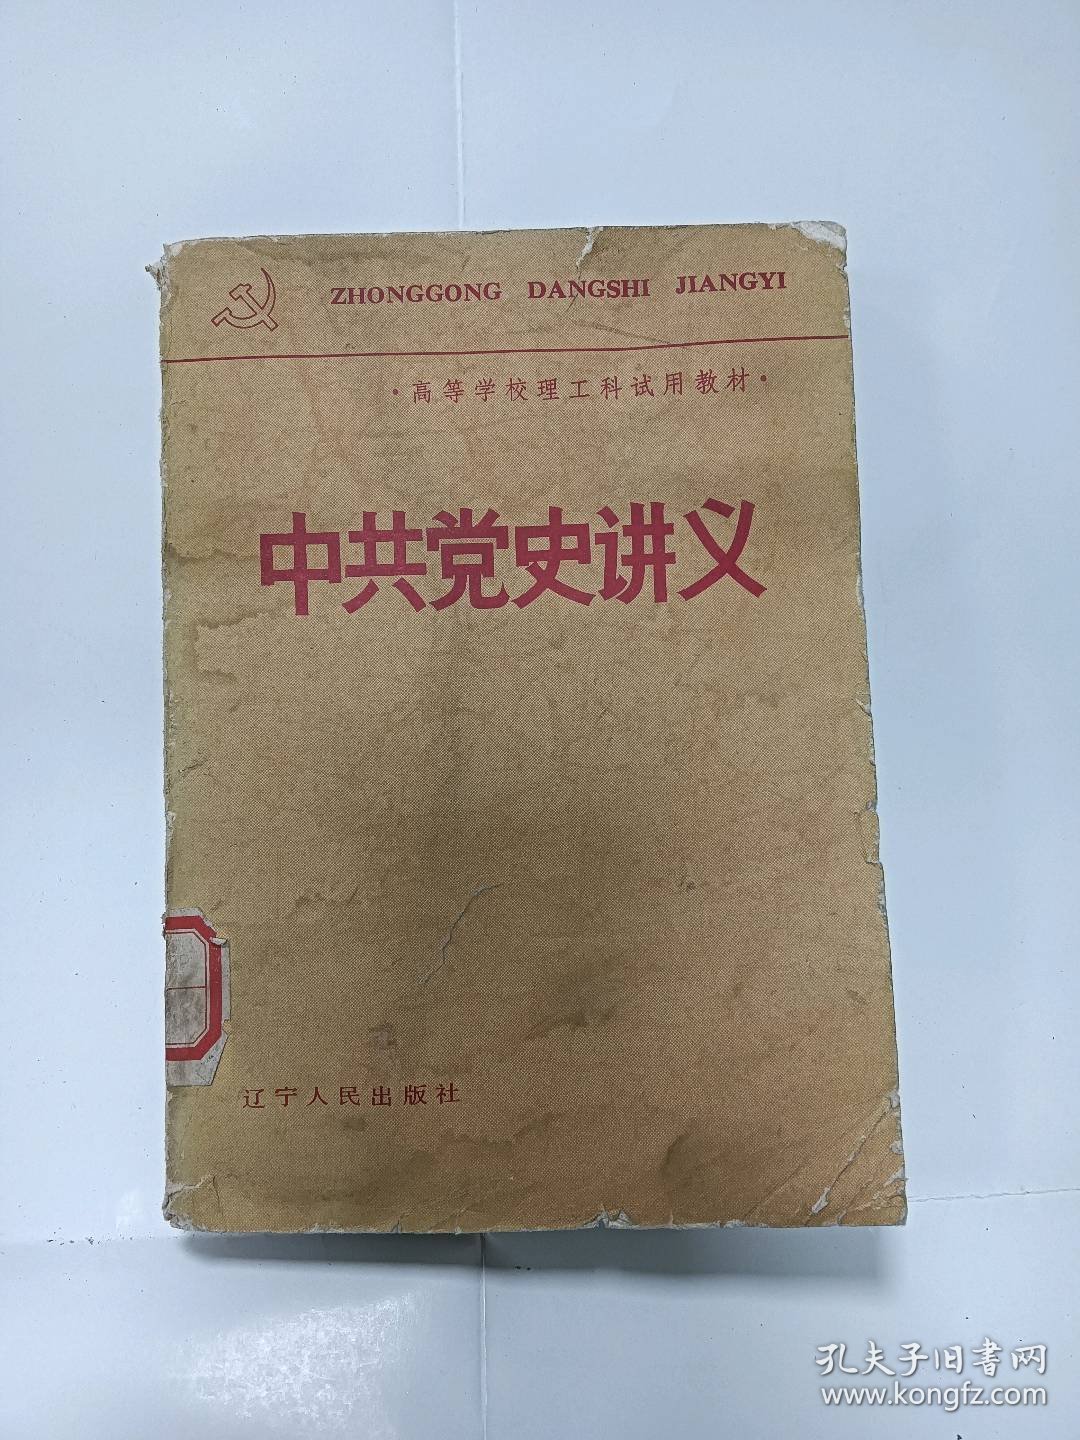 中共党史讲义普通图书/国学古籍/社会文化3090666